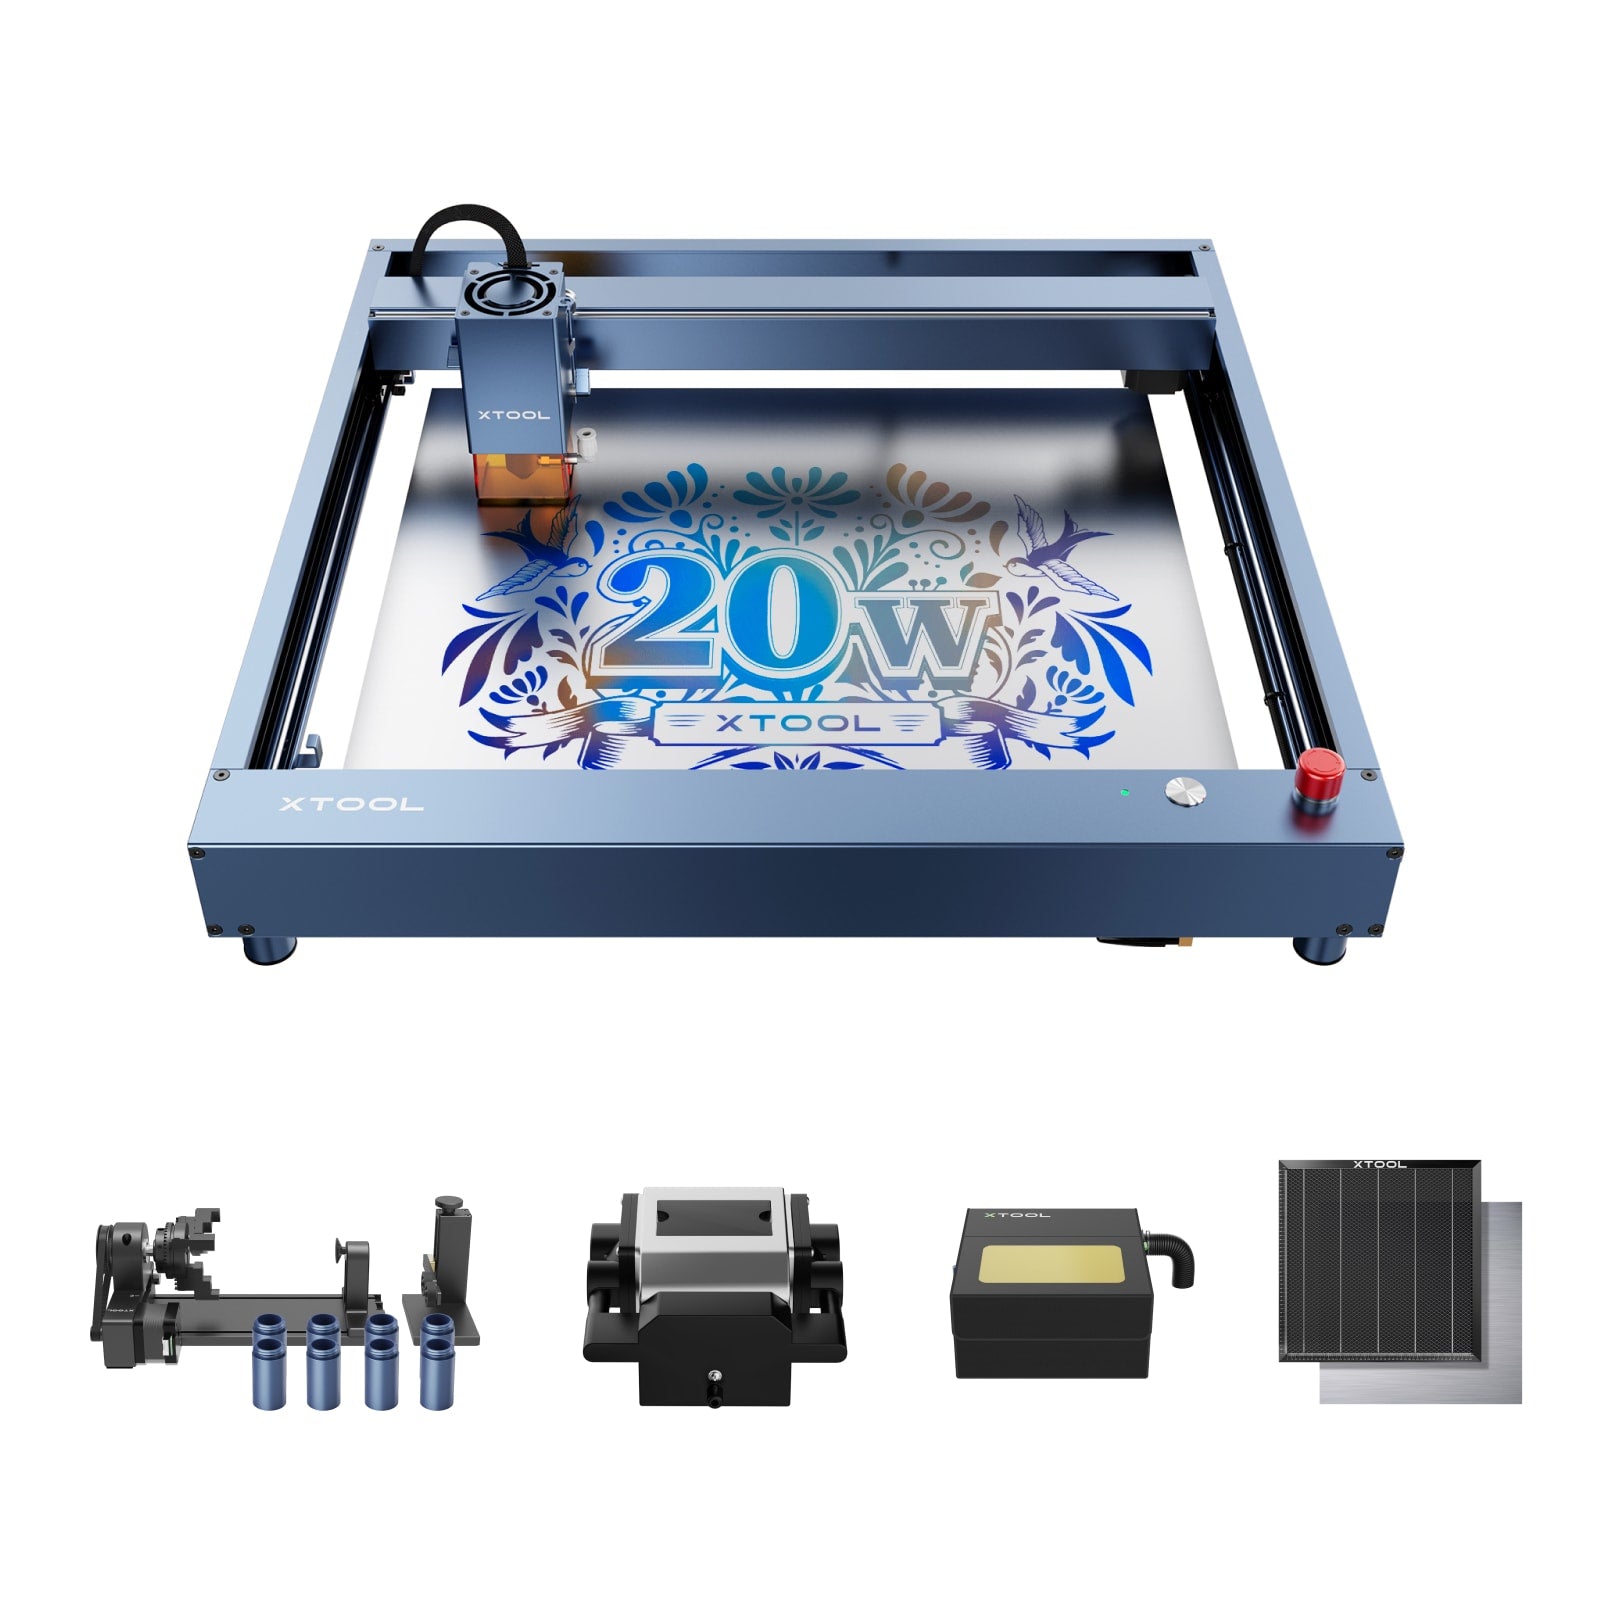 [Refurbished] xTool D1 Pro Laser Engraver Cutting Machine